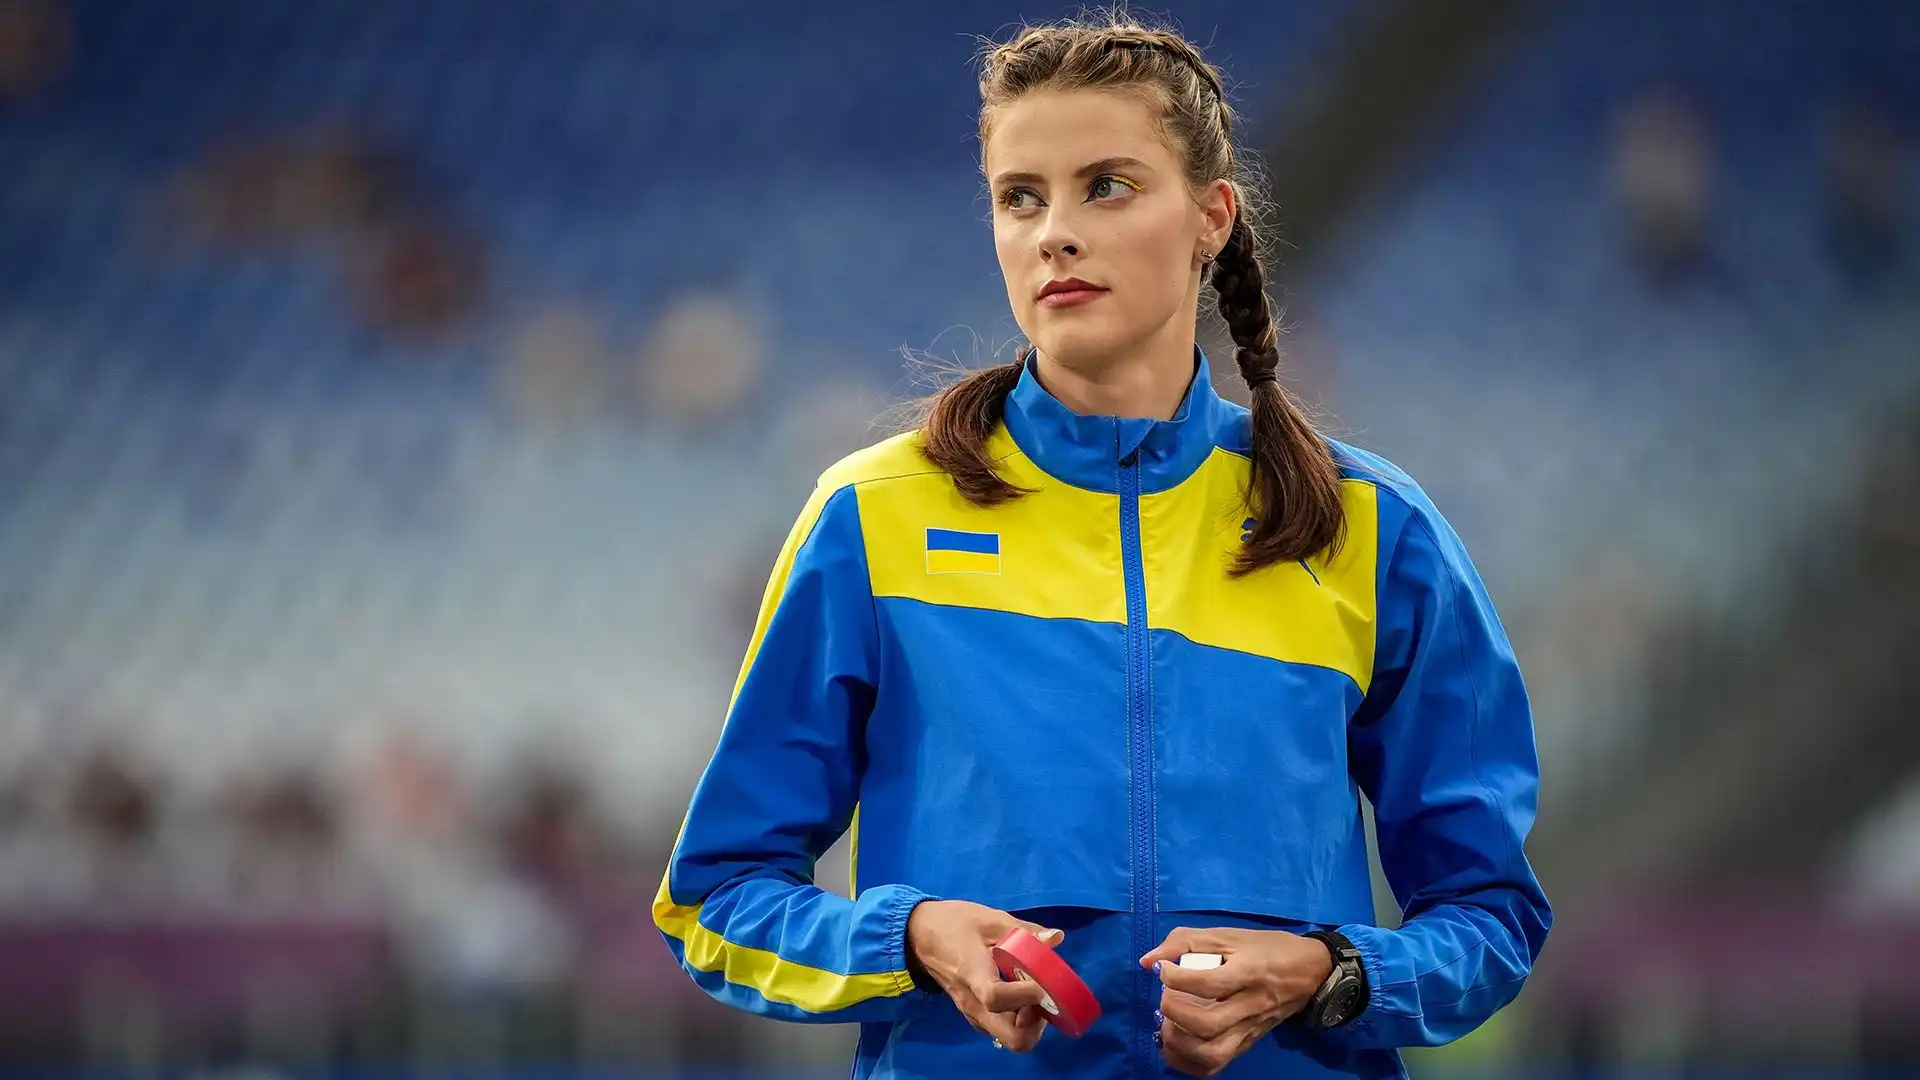 L'atleta ucraina ha vinto la seconda maglia d'oro consecutiva agli Europei